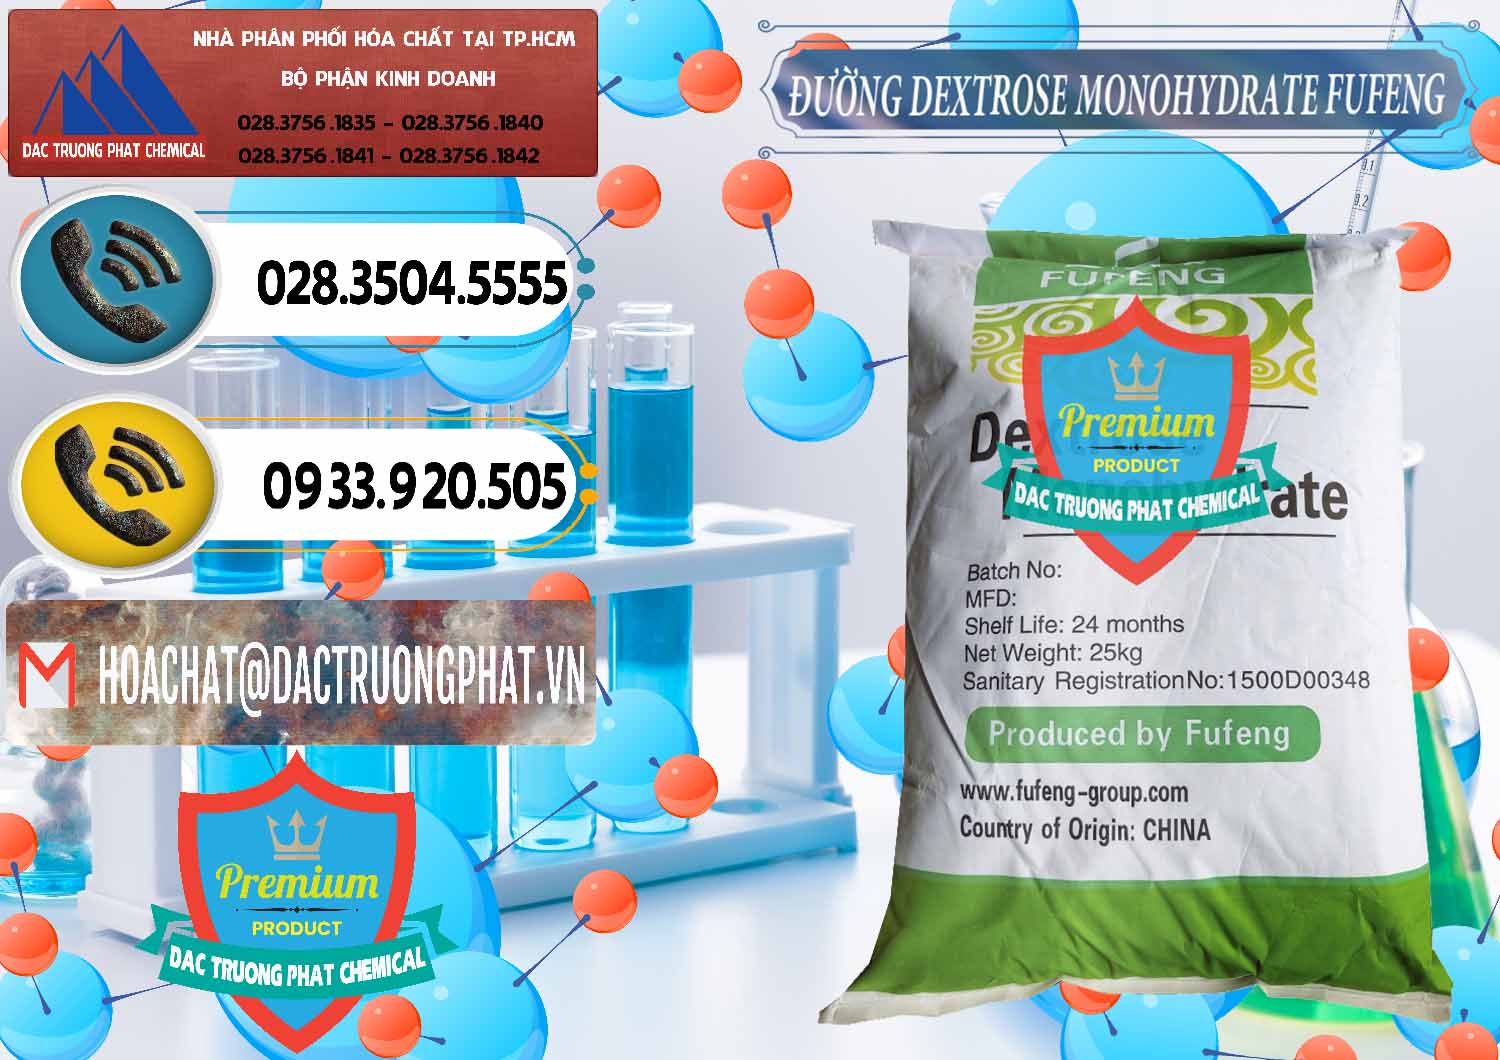 Đơn vị chuyên bán _ cung cấp Đường Dextrose Monohydrate Food Grade Fufeng Trung Quốc China - 0223 - Đơn vị chuyên bán và phân phối hóa chất tại TP.HCM - hoachatdetnhuom.vn